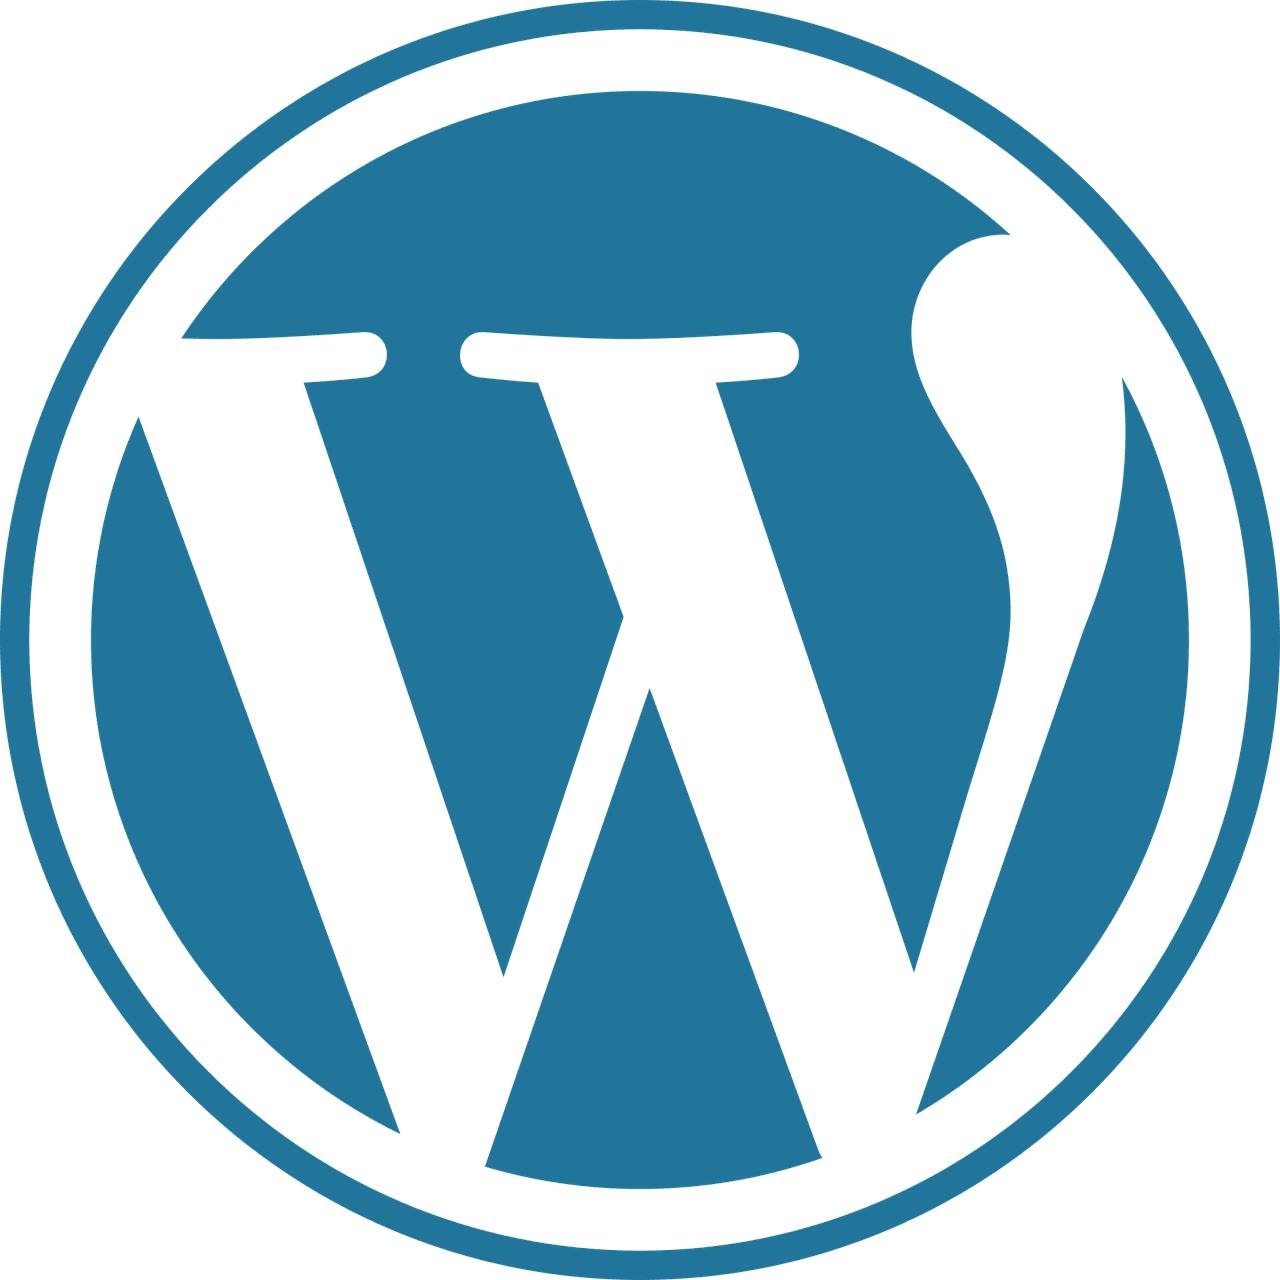 Notre support WordPress vous aide à résoudre les différents problèmes pouvant survenir lors de la création, la gestion ou la maintenance de votre site internet.